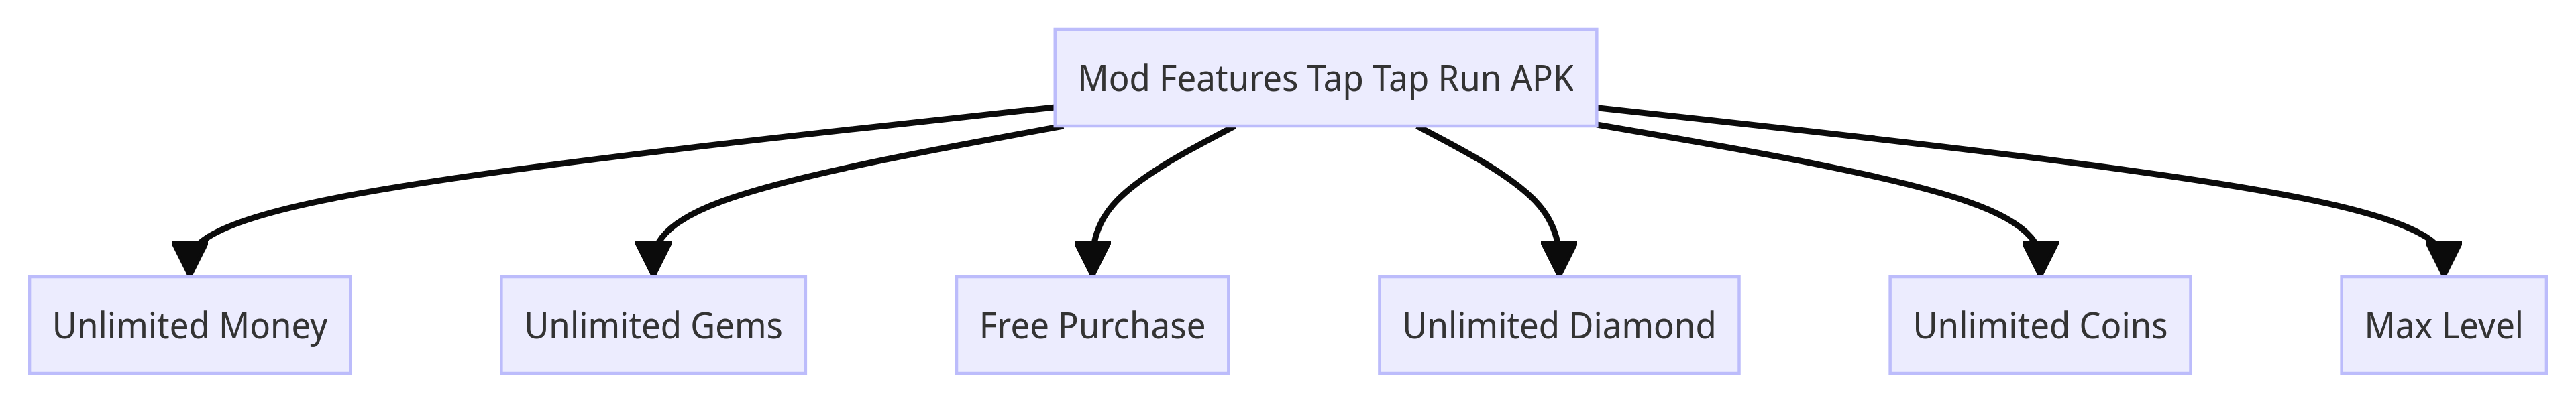 Mod Features Tap Tap Run APK